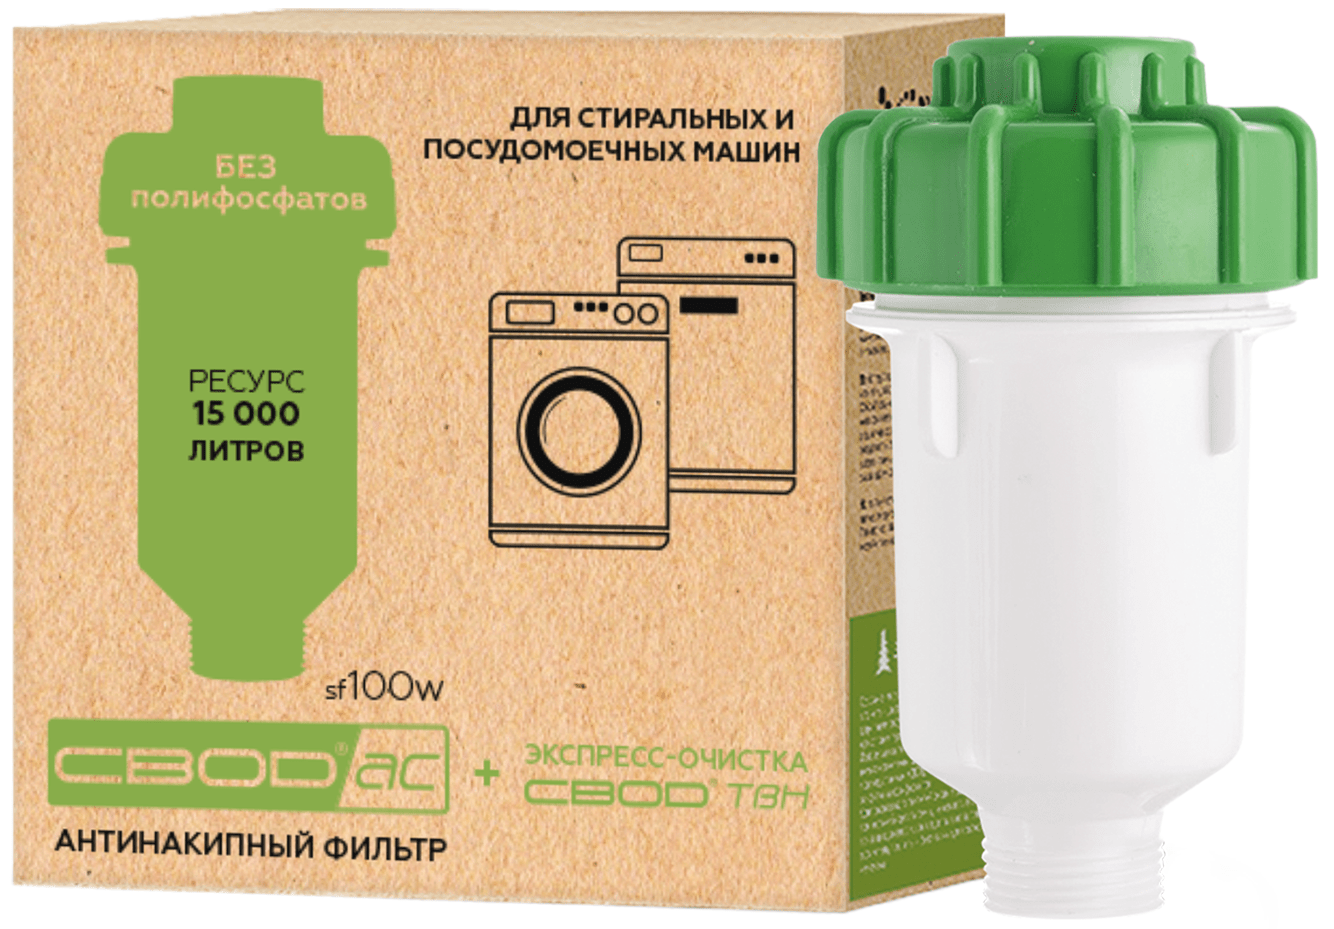 Фильтр СВОД-АС sf100w для стиральных и посудомоечных машин в Киеве